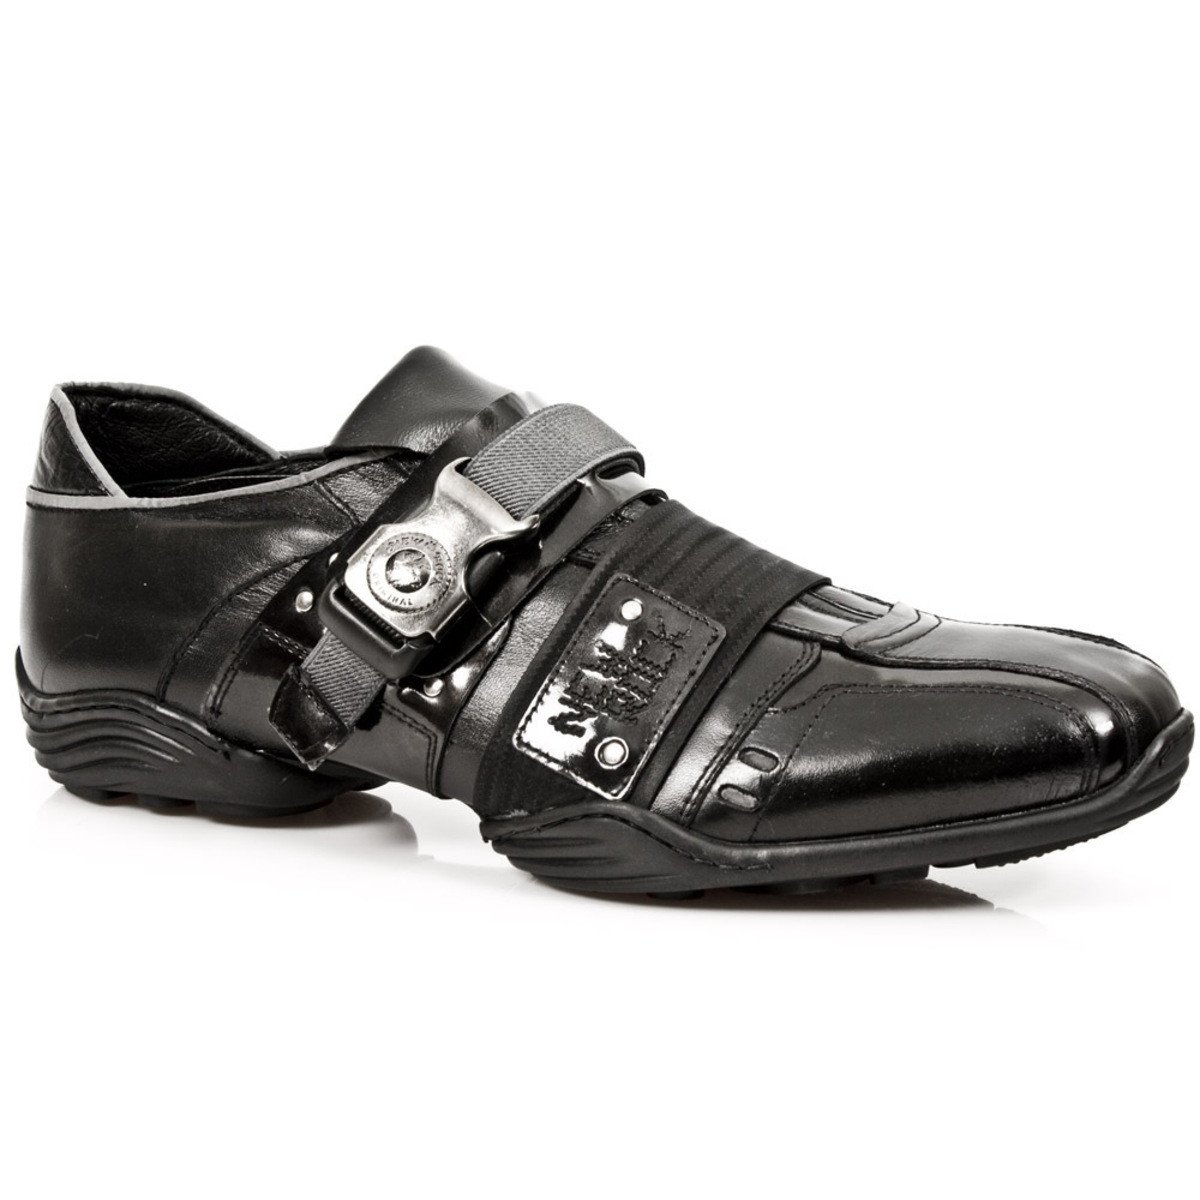 boty kožené dámské - CHAROL STUCO ACERO - NEW ROCK - M.8147-S1 39